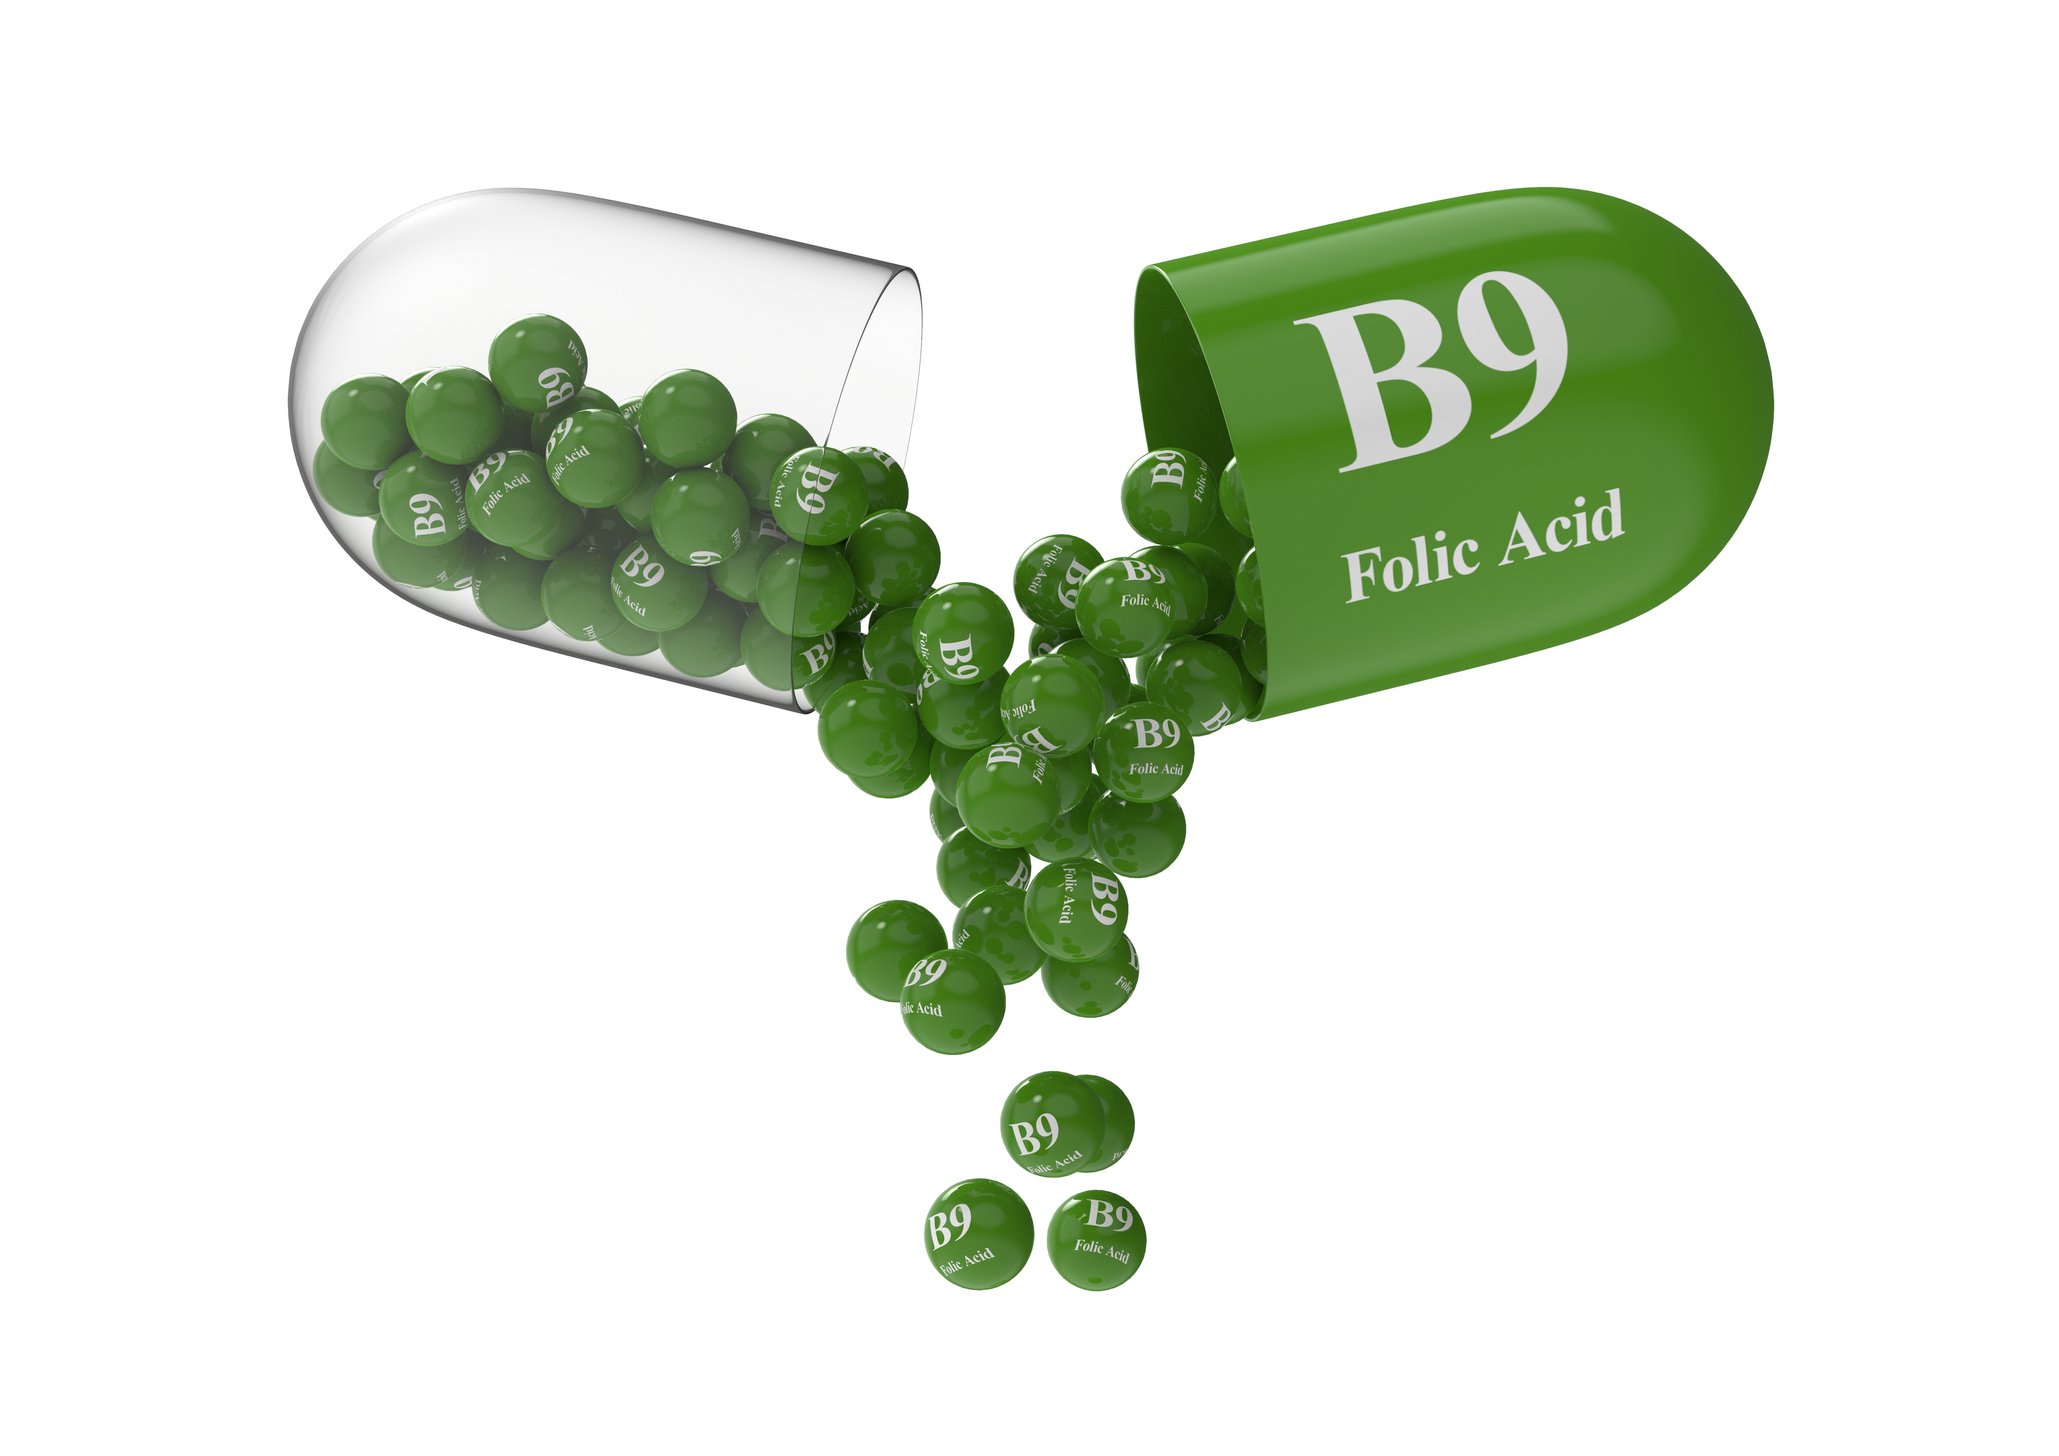 B9 folic acid